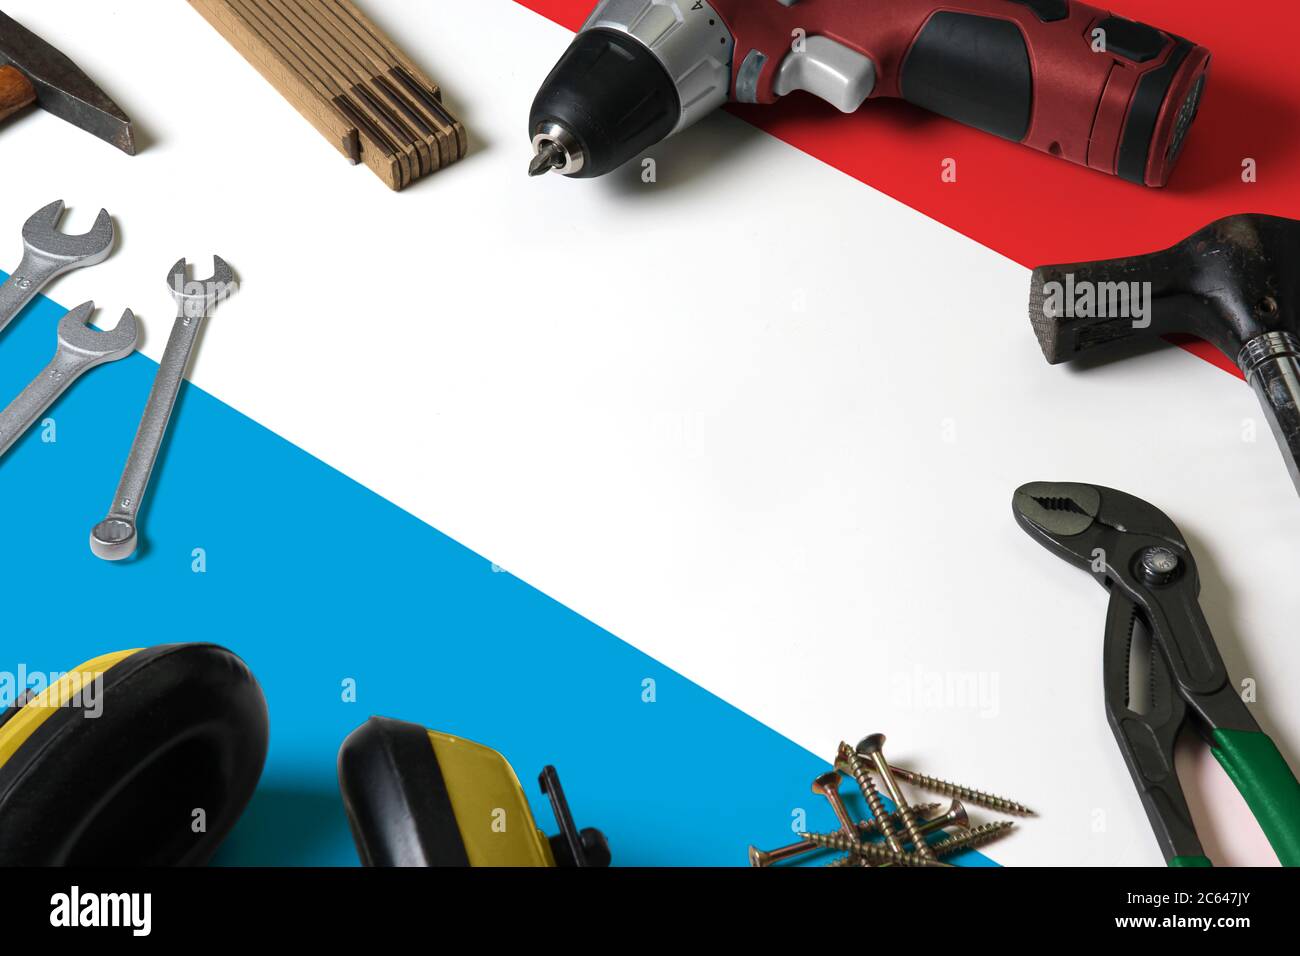 Luxemburg Flagge auf Reparatur-Tool Konzept Holztisch Hintergrund. Mechanisches Service-Thema mit nationalen Objekten. Stockfoto